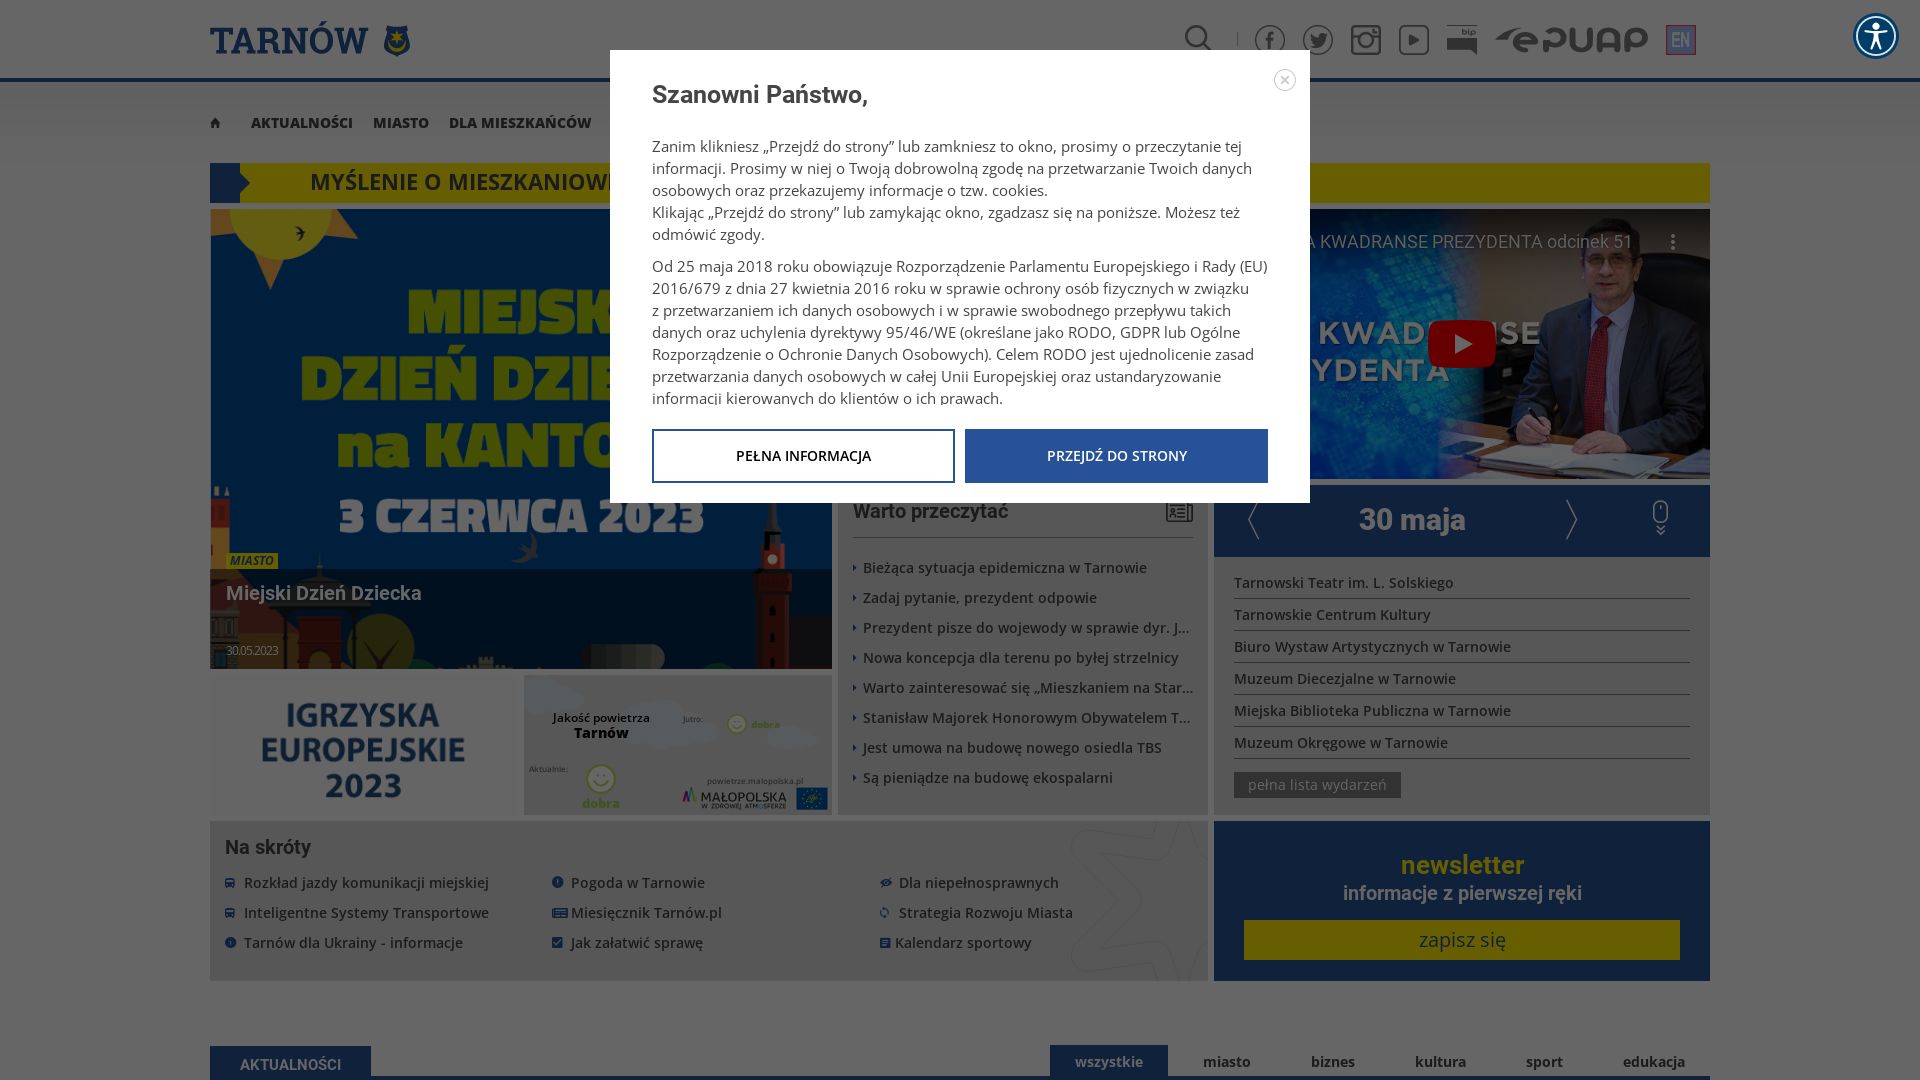 Website status tarnow.pl is   ONLINE